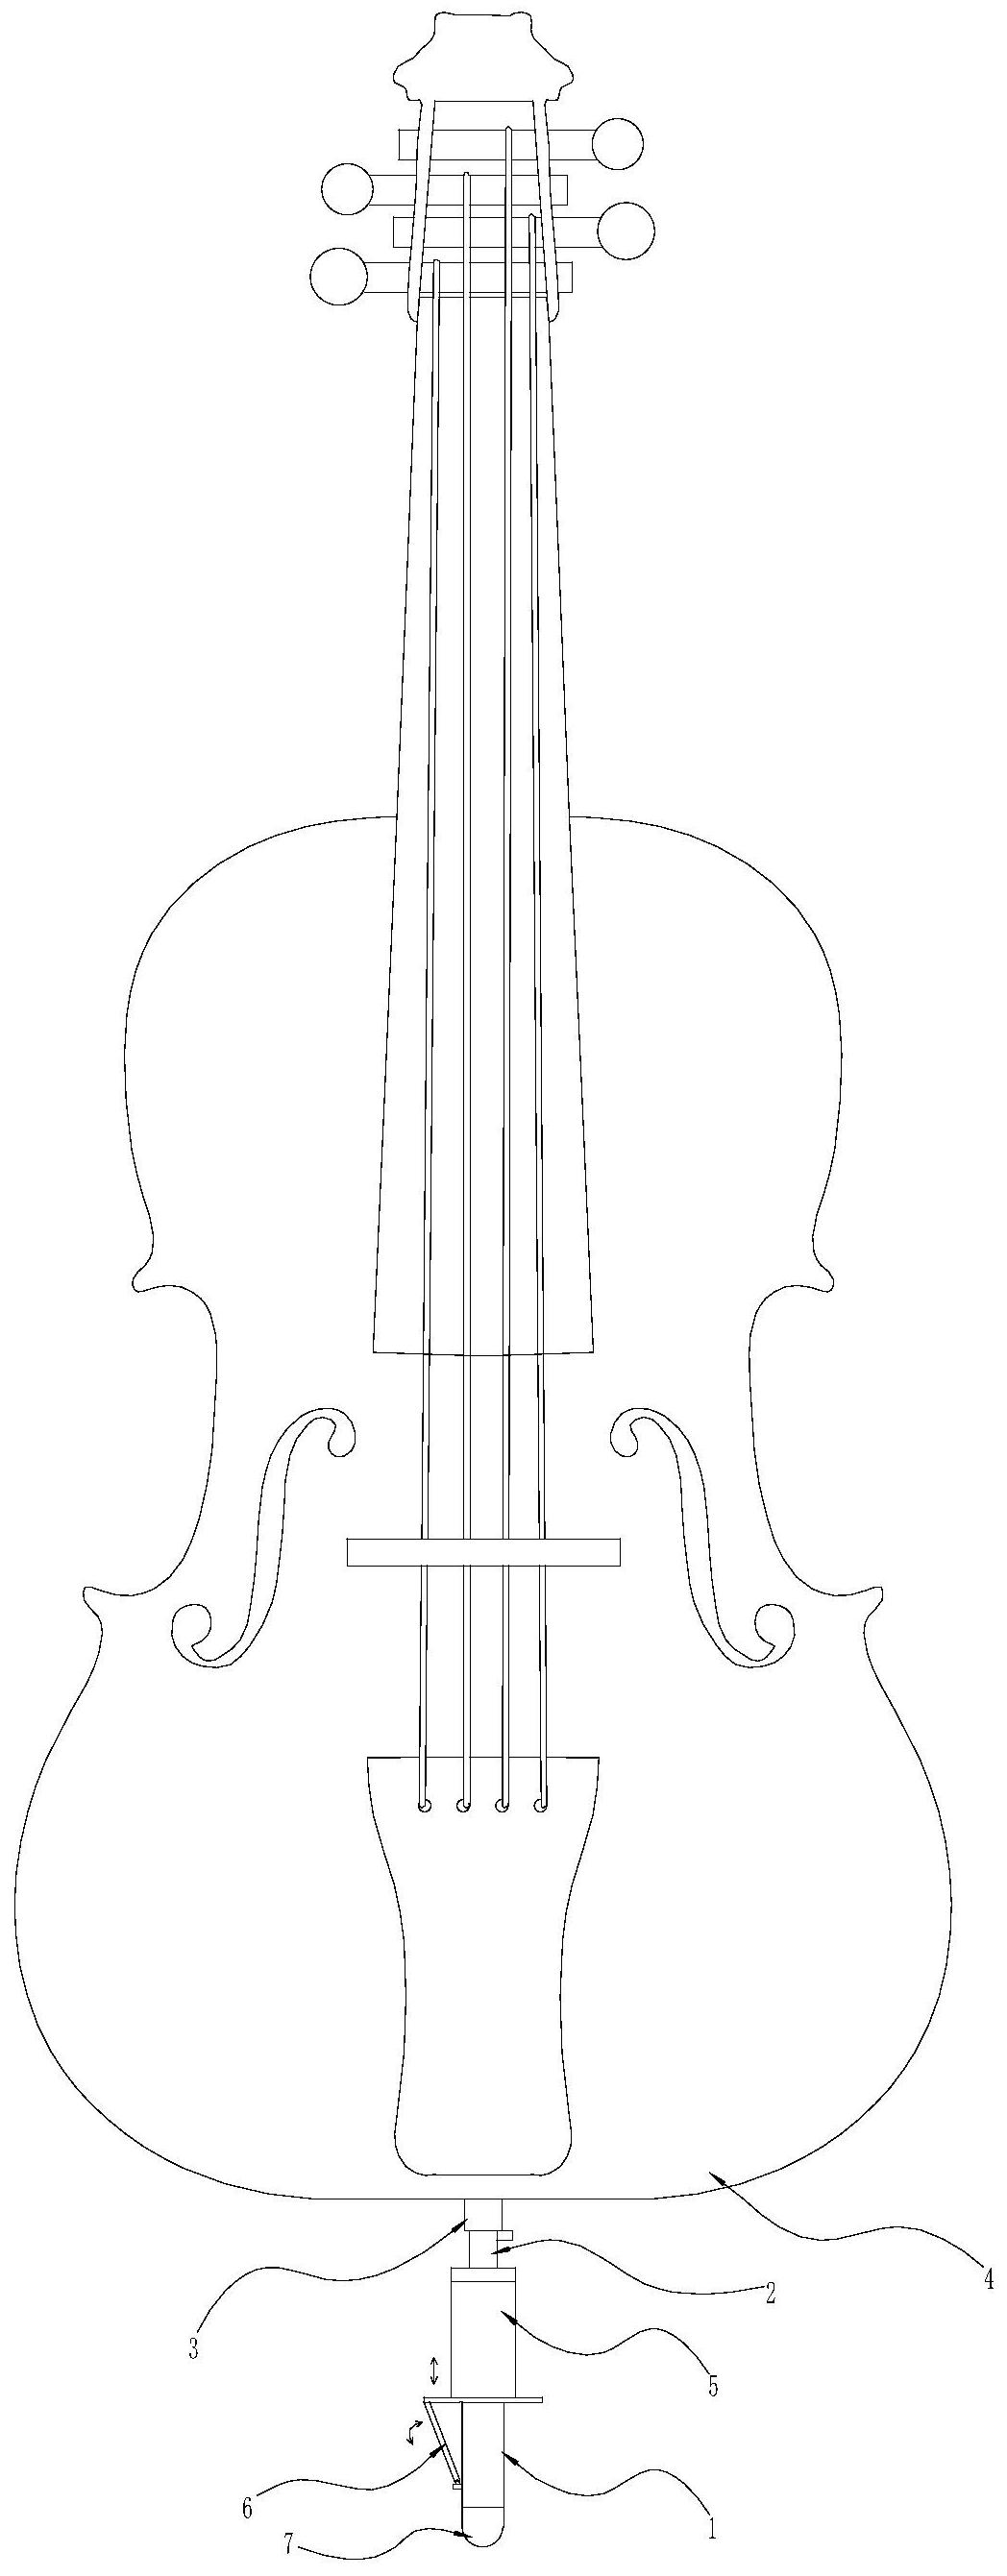 大提琴简笔画图片图片